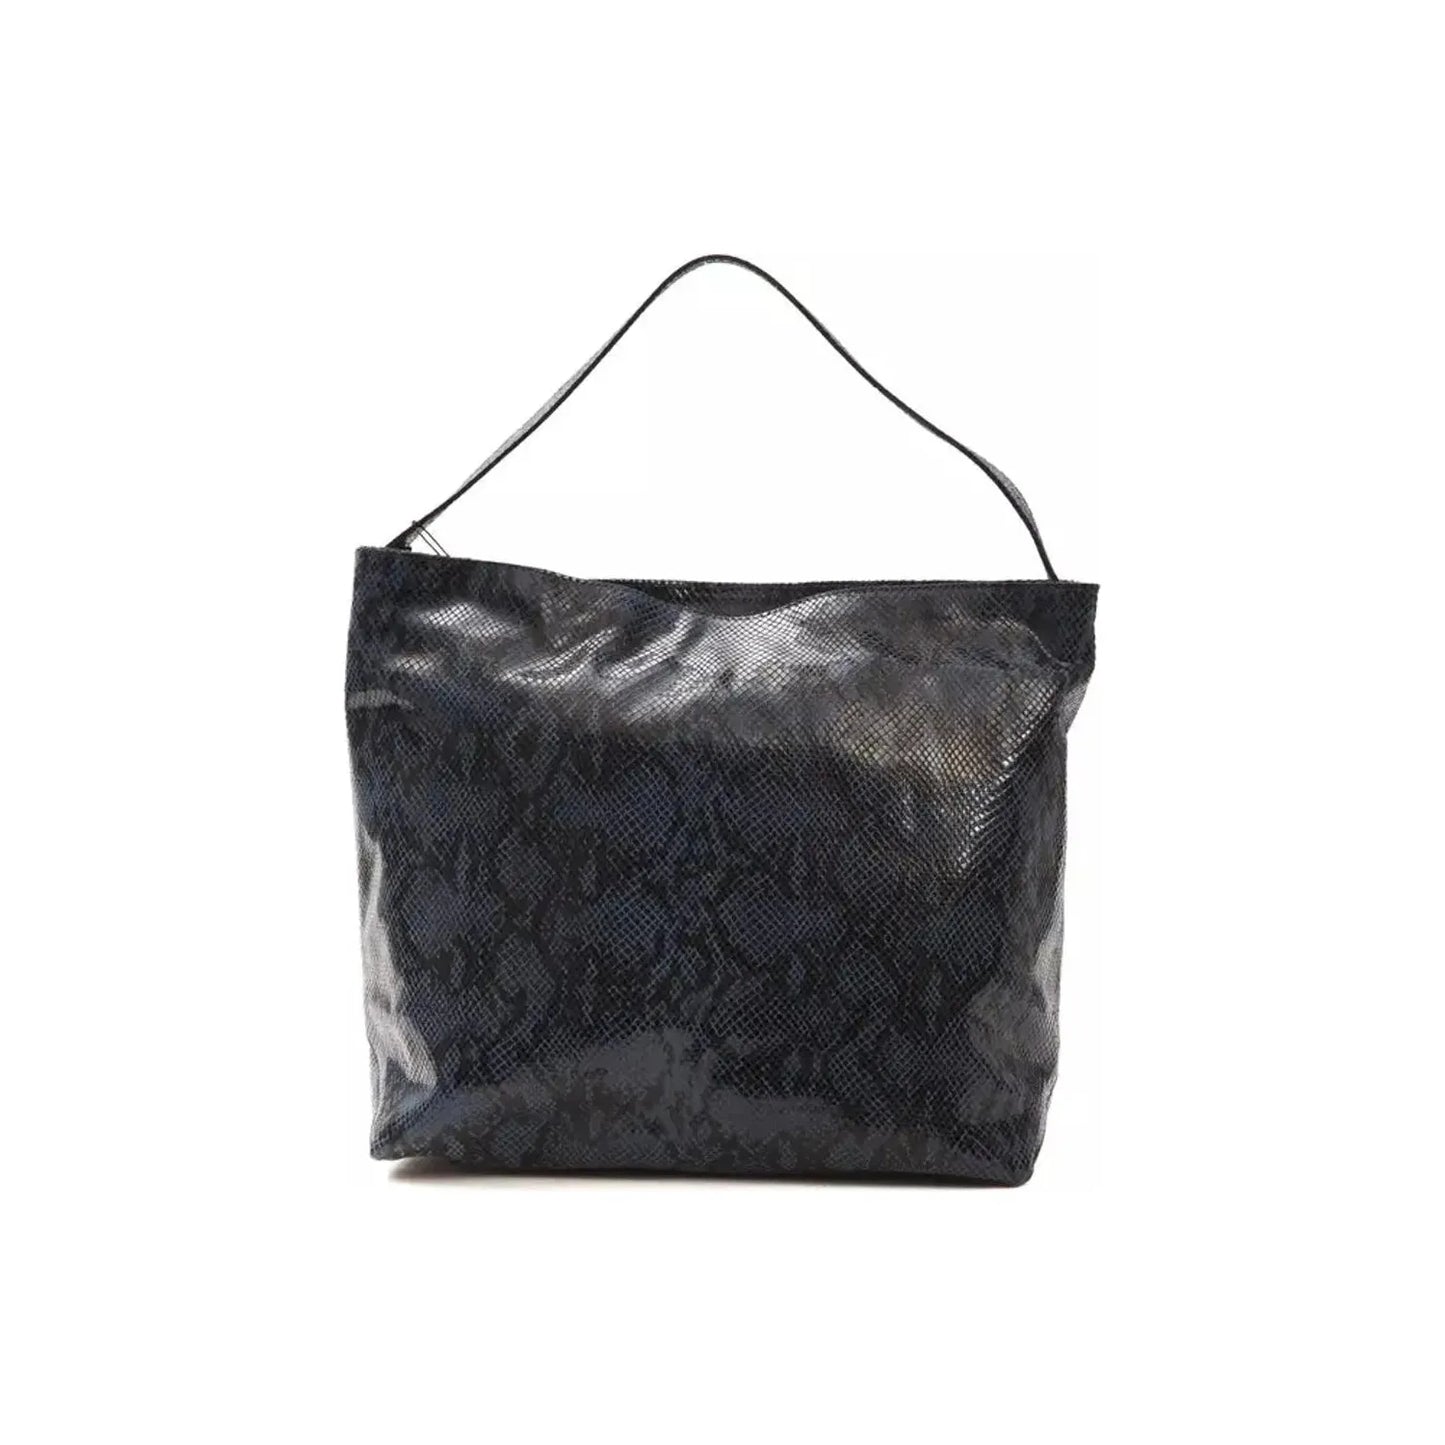 Pompei Donatella Elegant Blue Python Print Leather Shoulder Bag blue-leather-shoulder-bag WOMAN SHOULDER BAGS stock_product_image_5786_1991412582-20-f72af999-ddd.webp